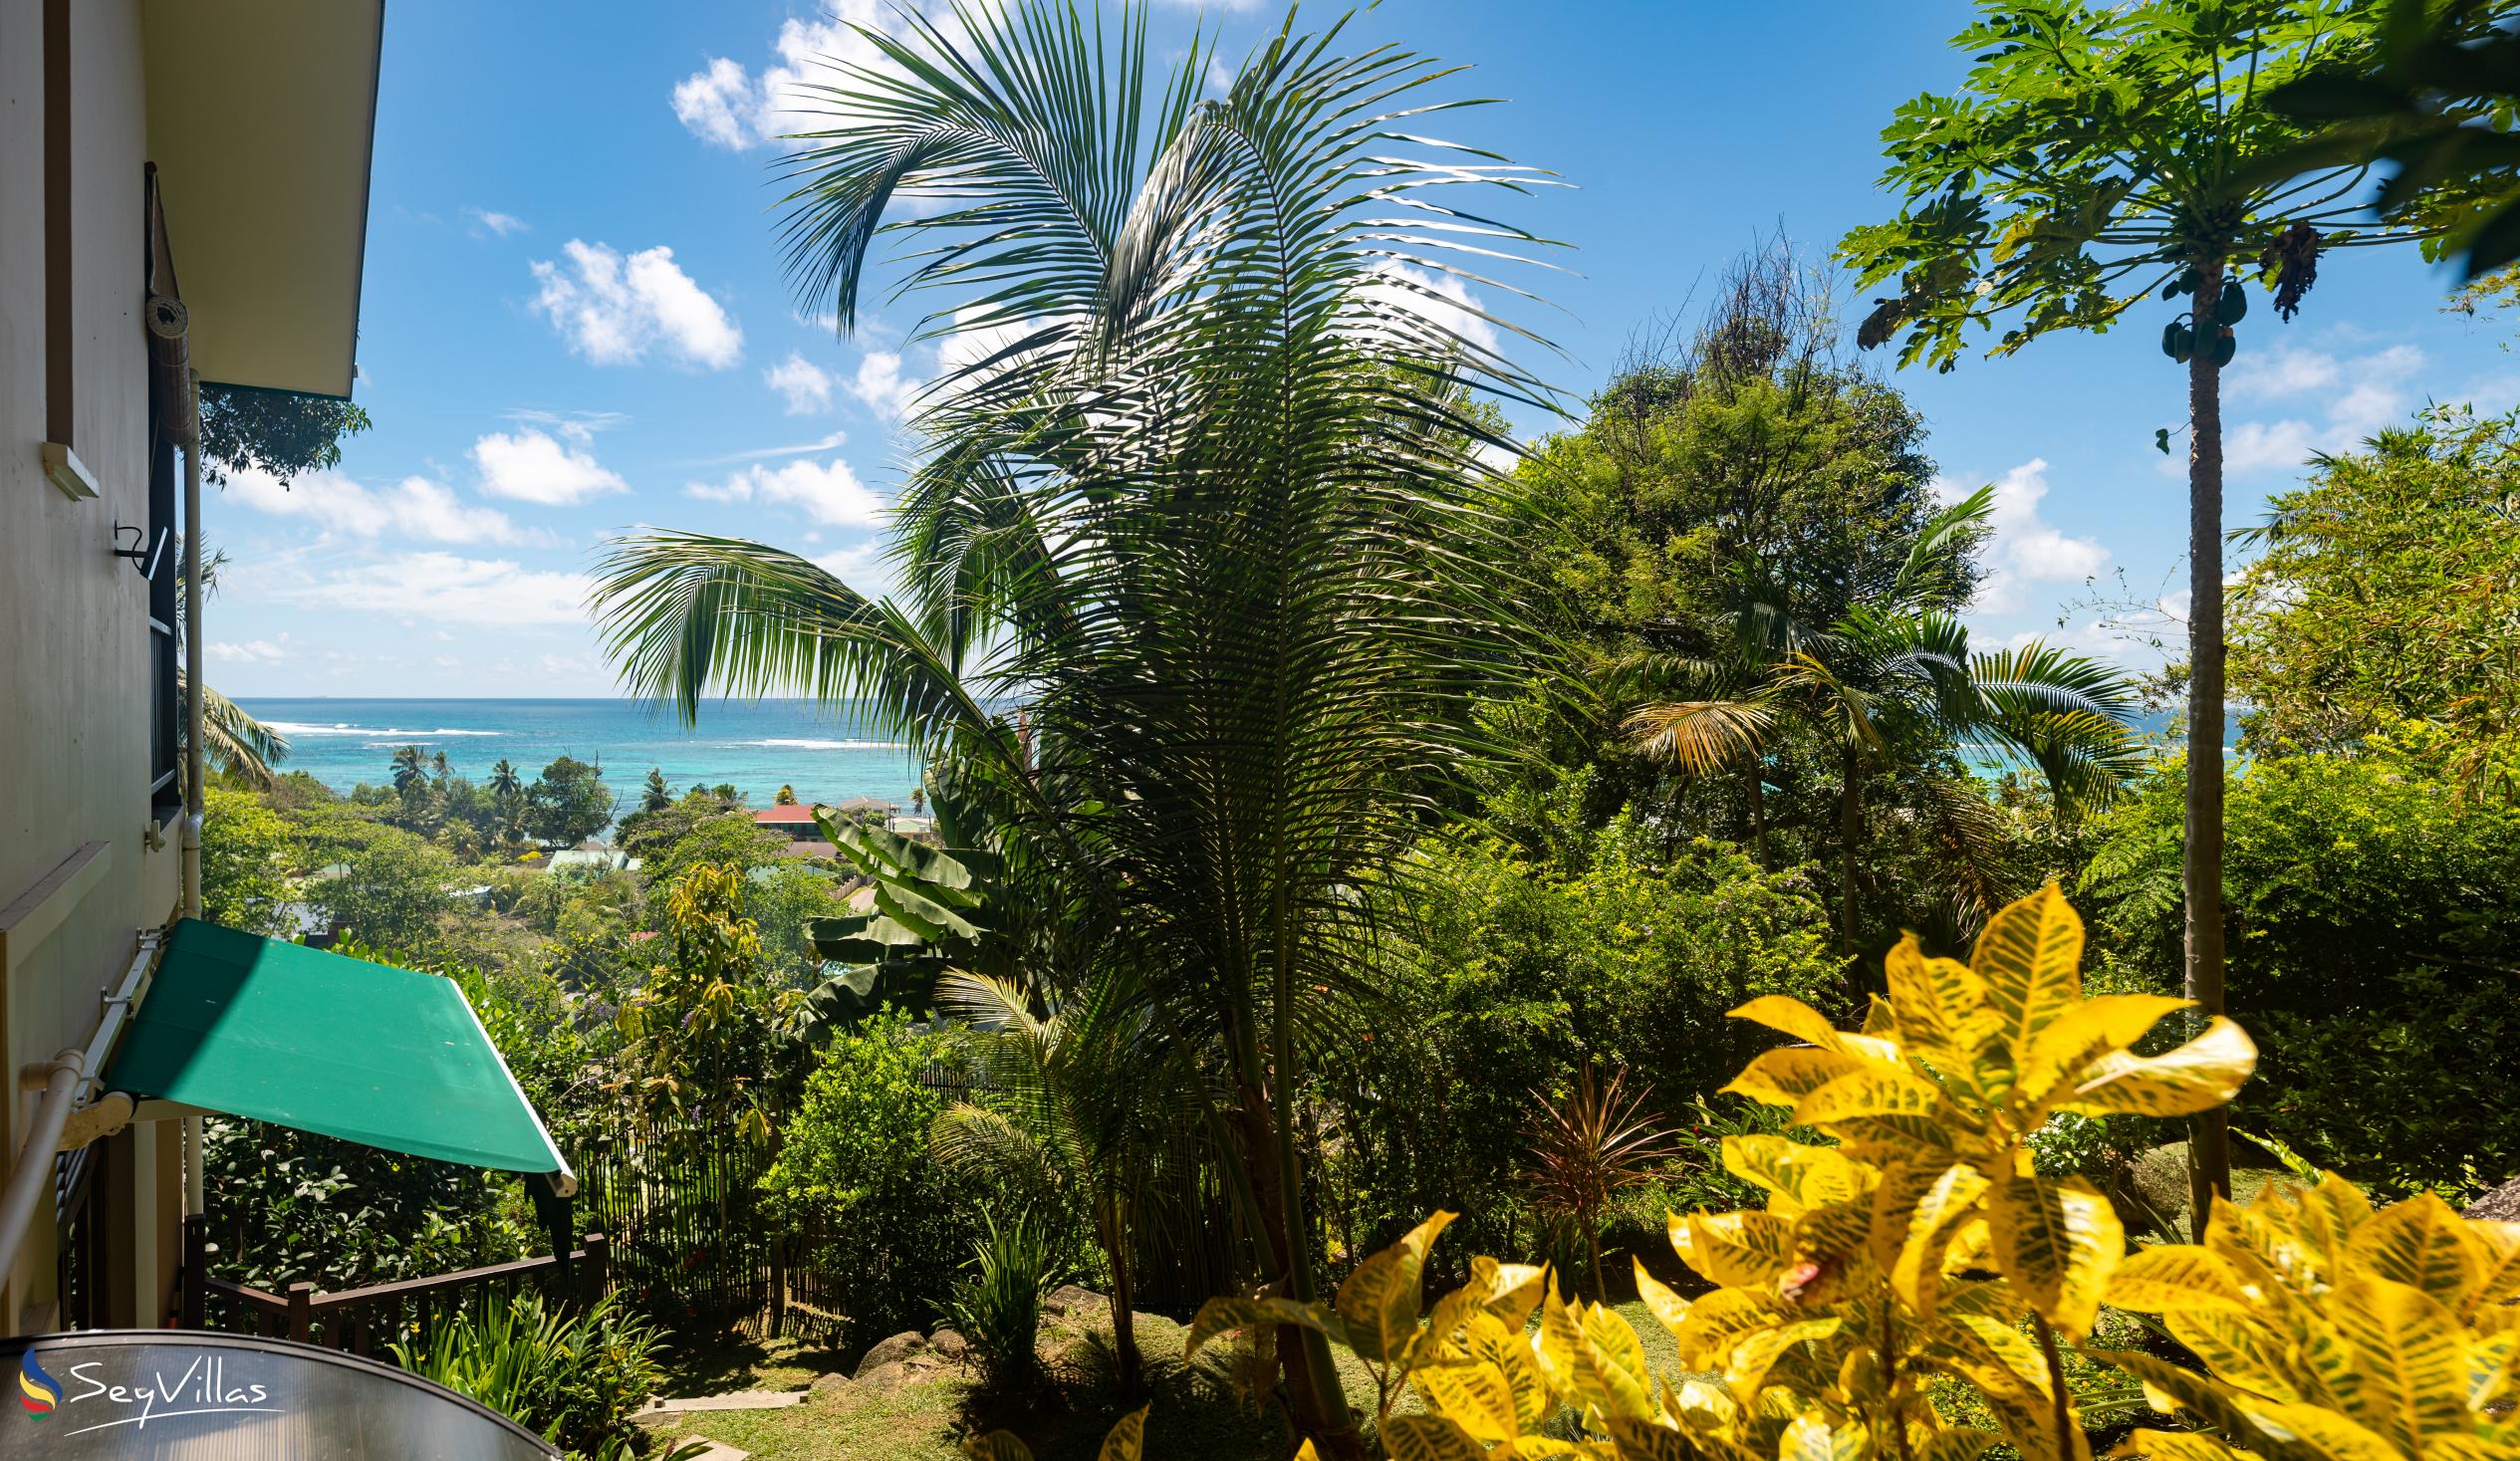 Foto 4: Fler Payanke - Aussenbereich - Mahé (Seychellen)